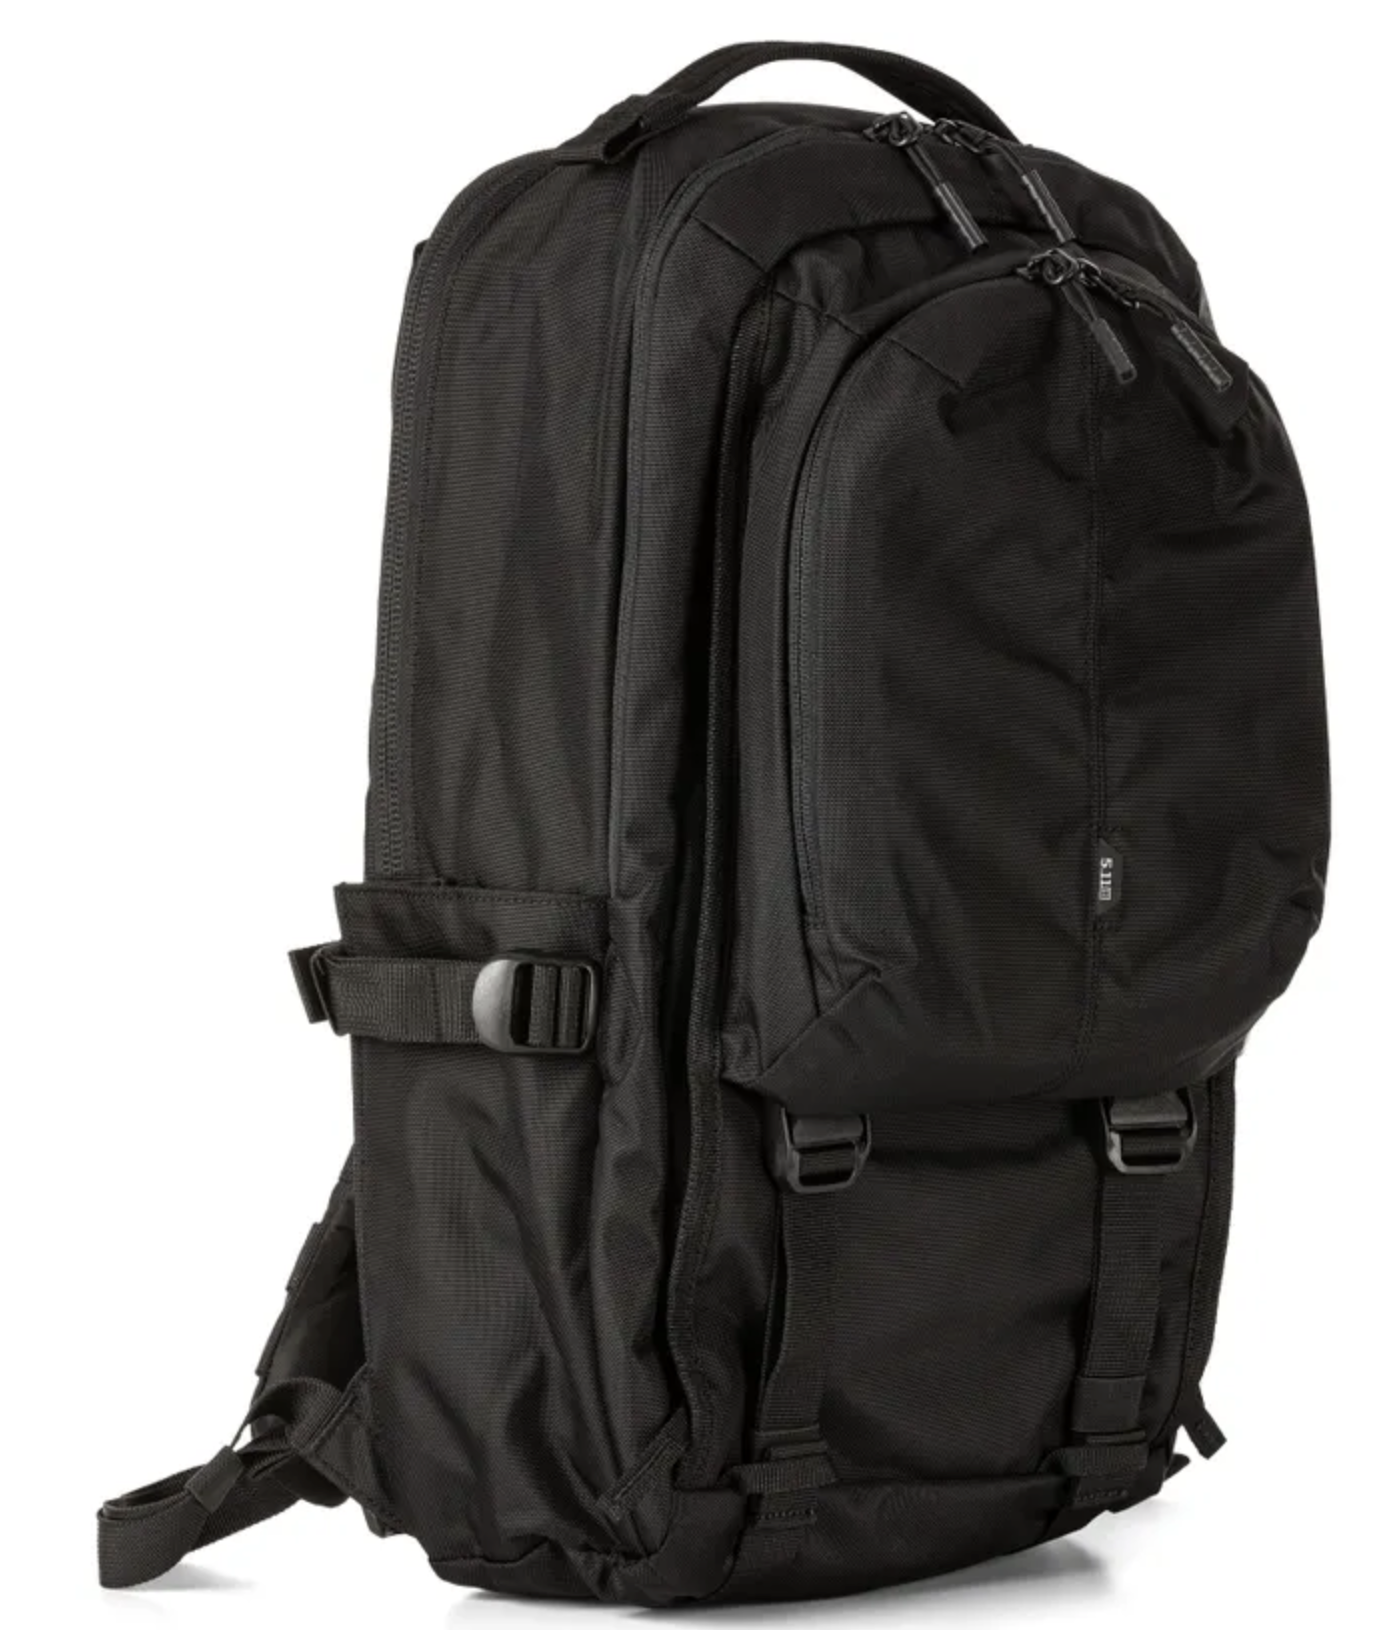 5.11 - LV18 Backpack 2.0 - 30L - Black (019)